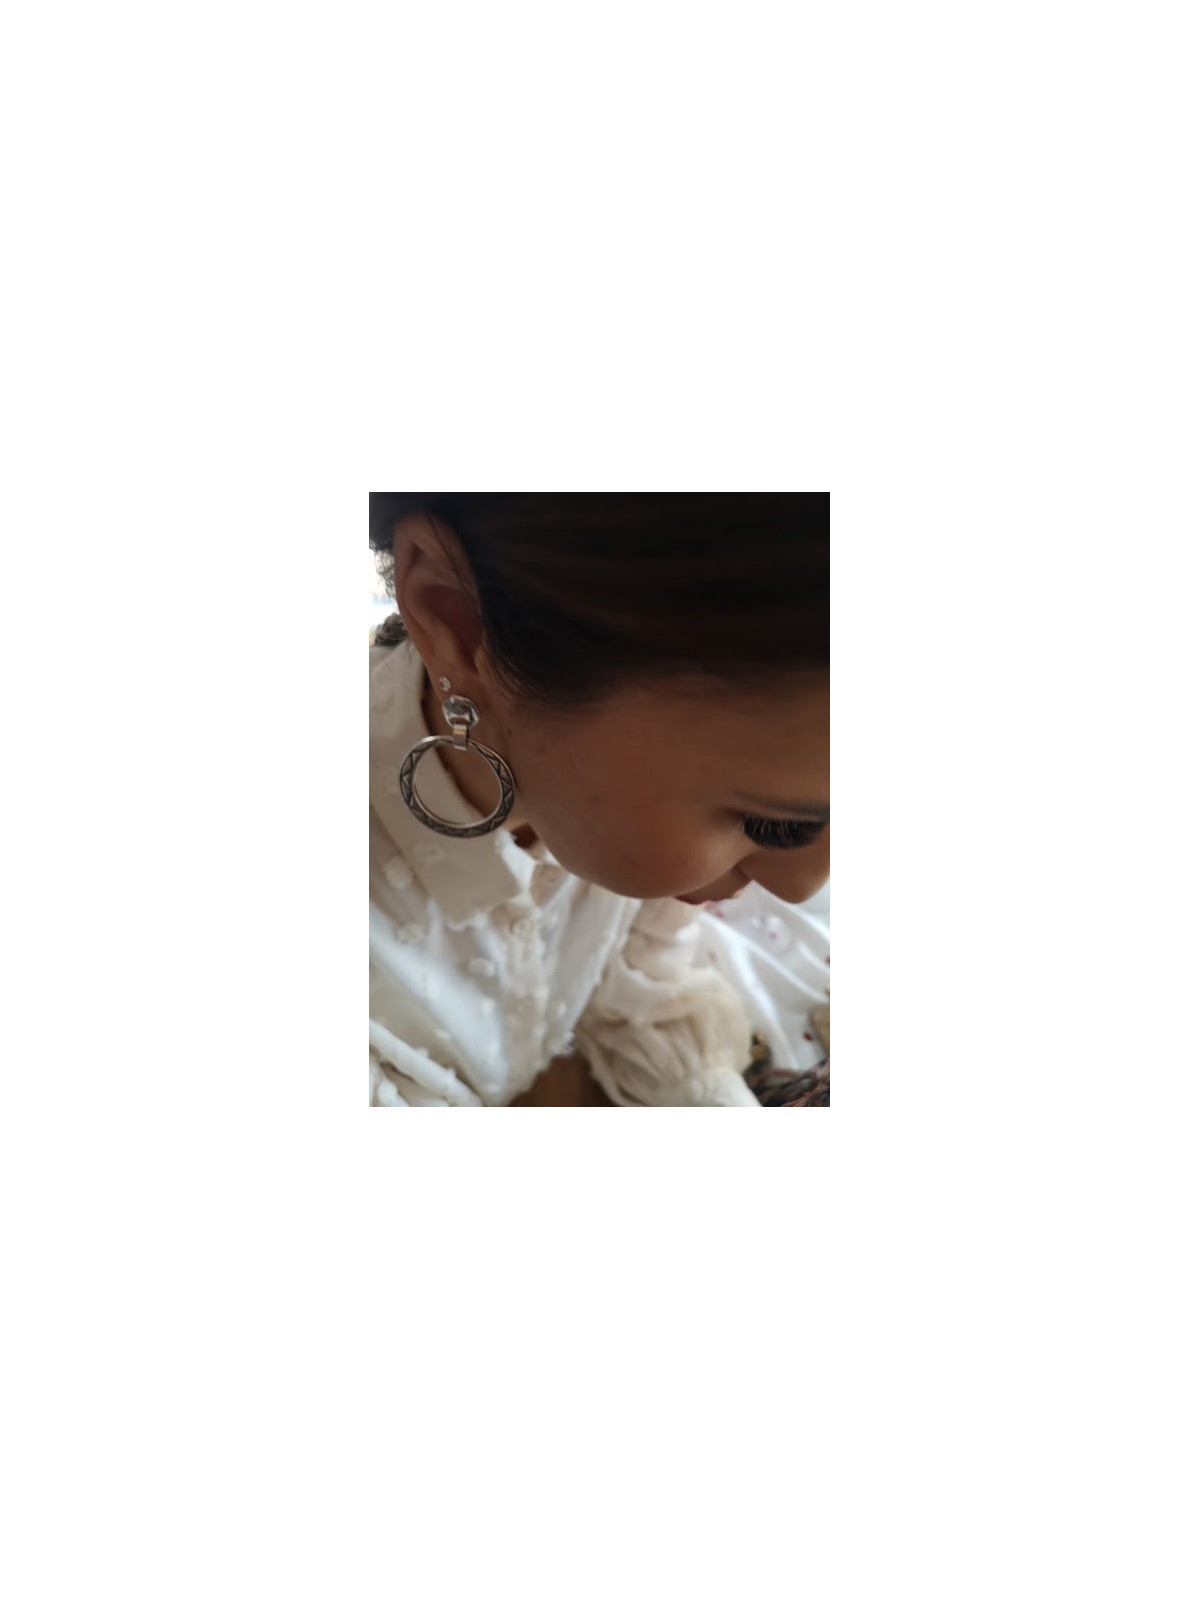 Collection Eclipse boucles d'oreilles Ciclon l 3 vue en contre plongée l Tilleulmenthe boutique de mode femme